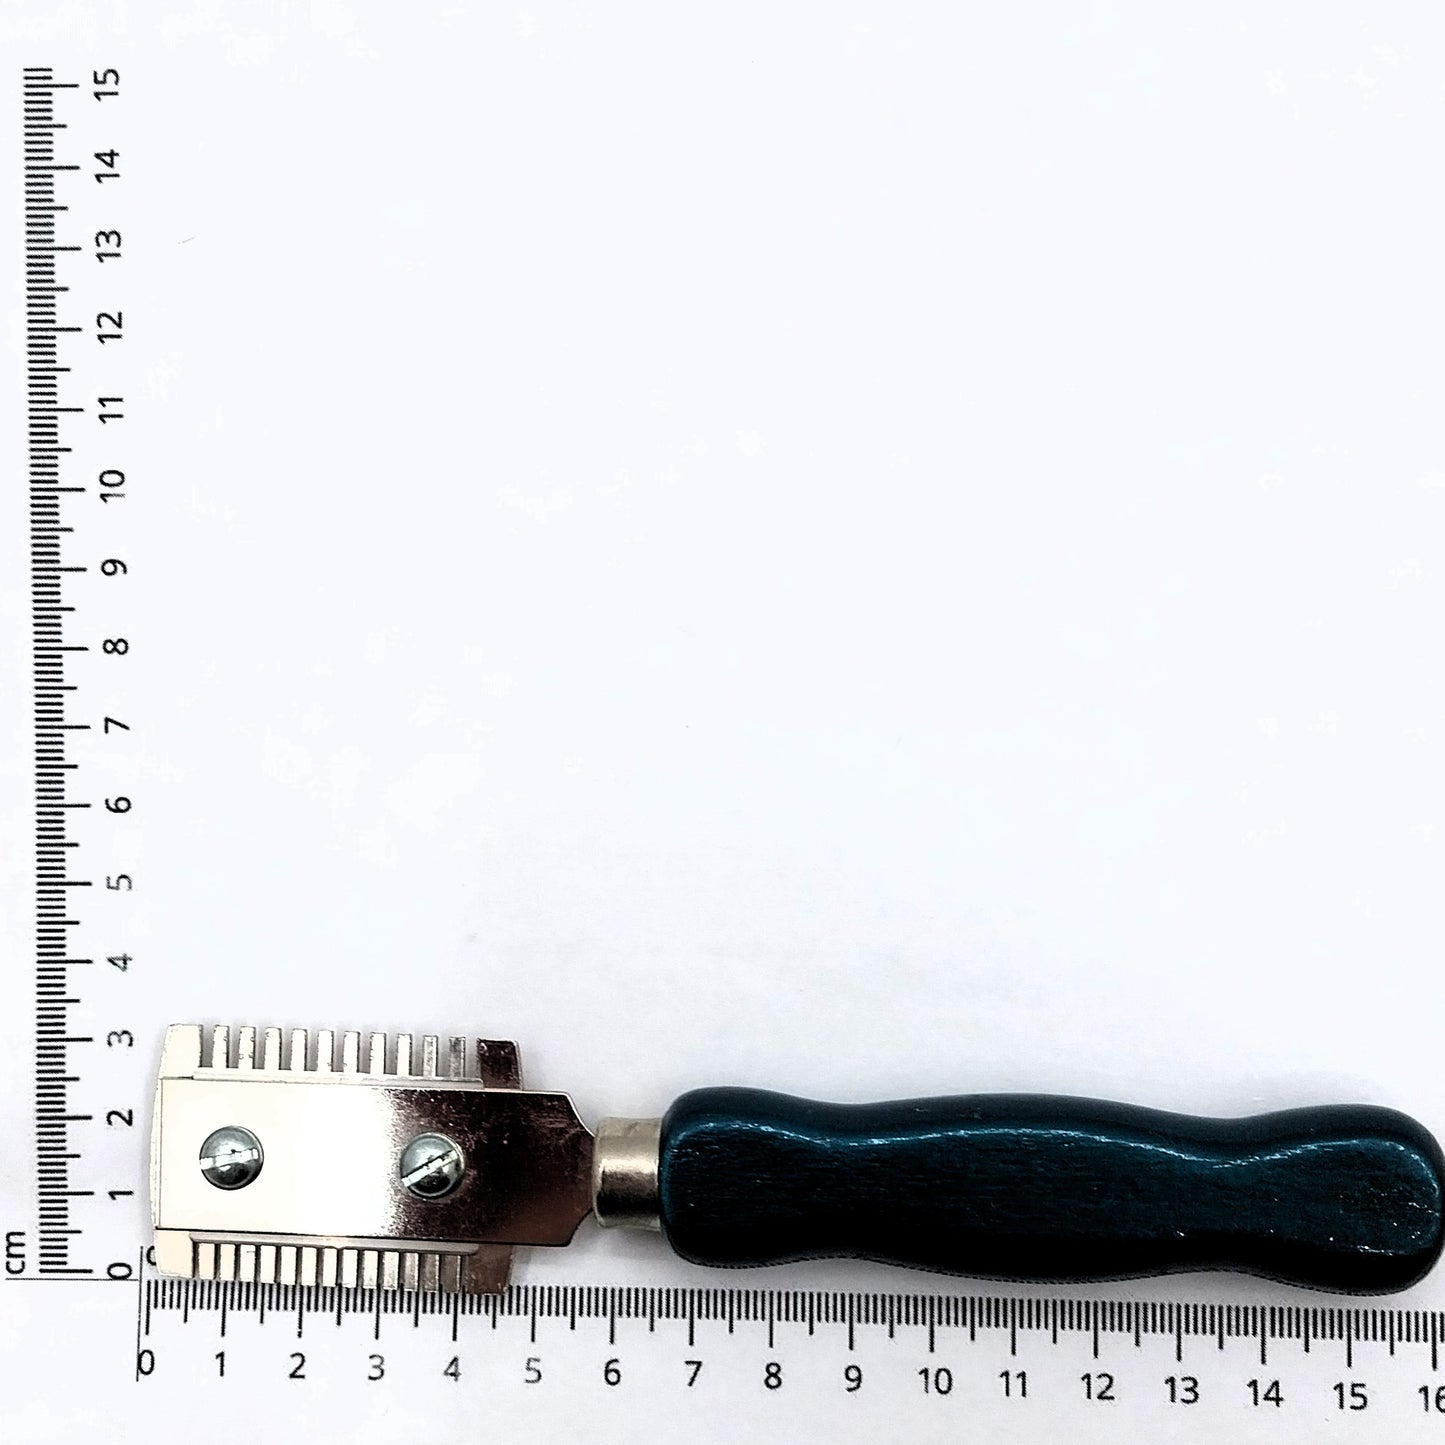 Razor Effiliermesser, Stylingmesser, Entfilzungsmesser zur Fellpflege von Hunden und Katzen